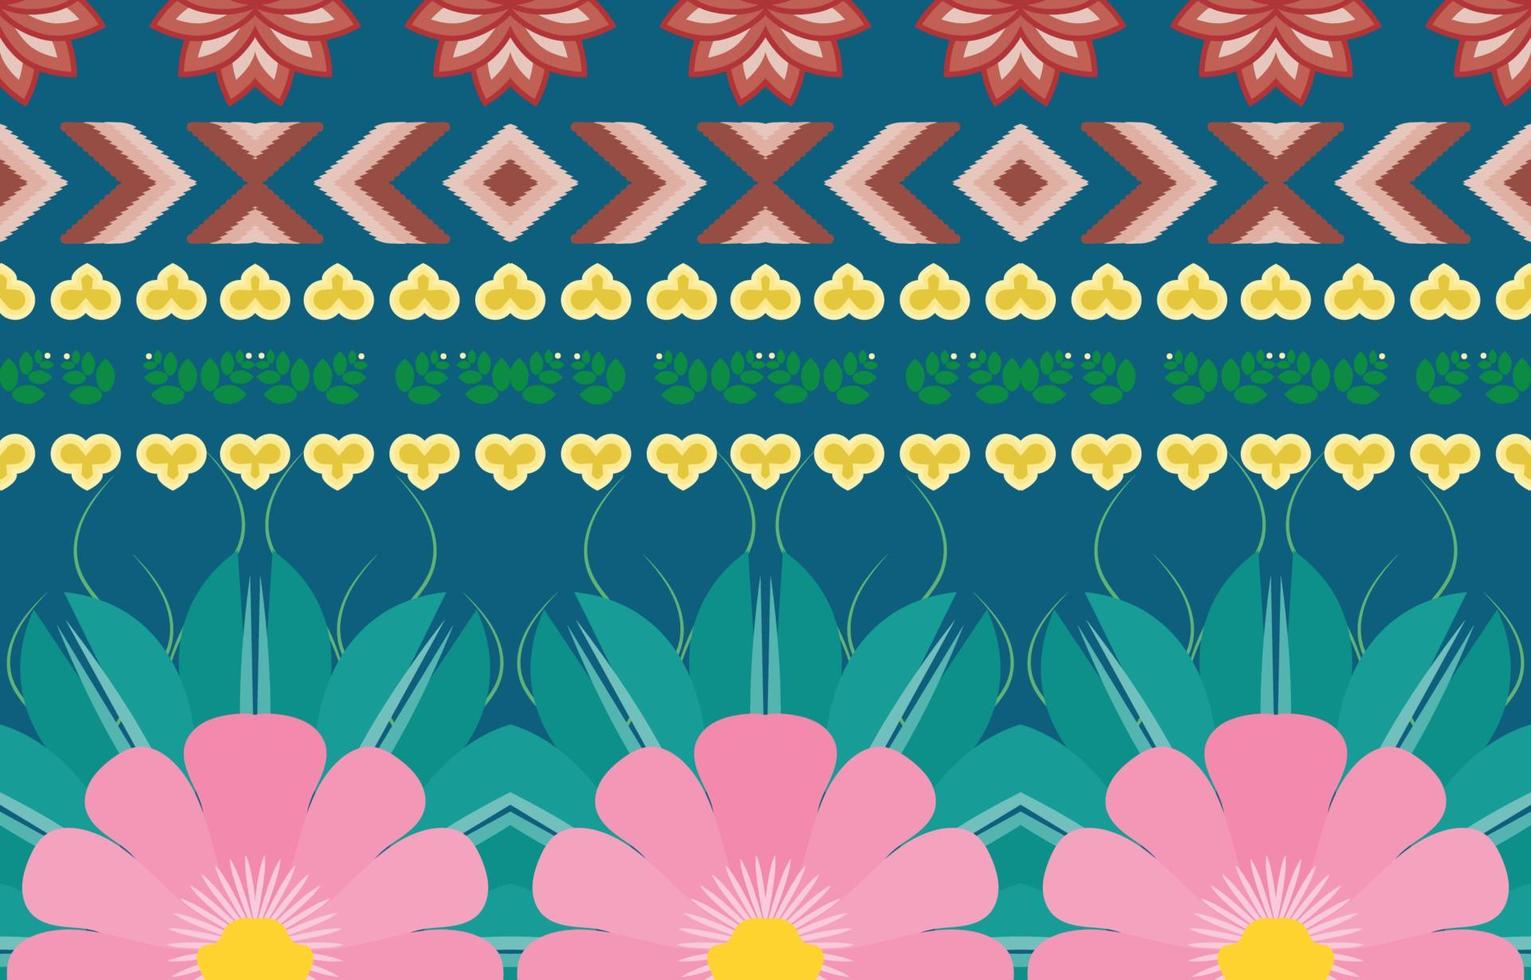 bloem kleurrijke stof, geometrische etnische patroon in traditionele Oosterse achtergrondontwerp voor tapijt, behang, kleding, verpakking, batik, vector illustratie borduurstijl.